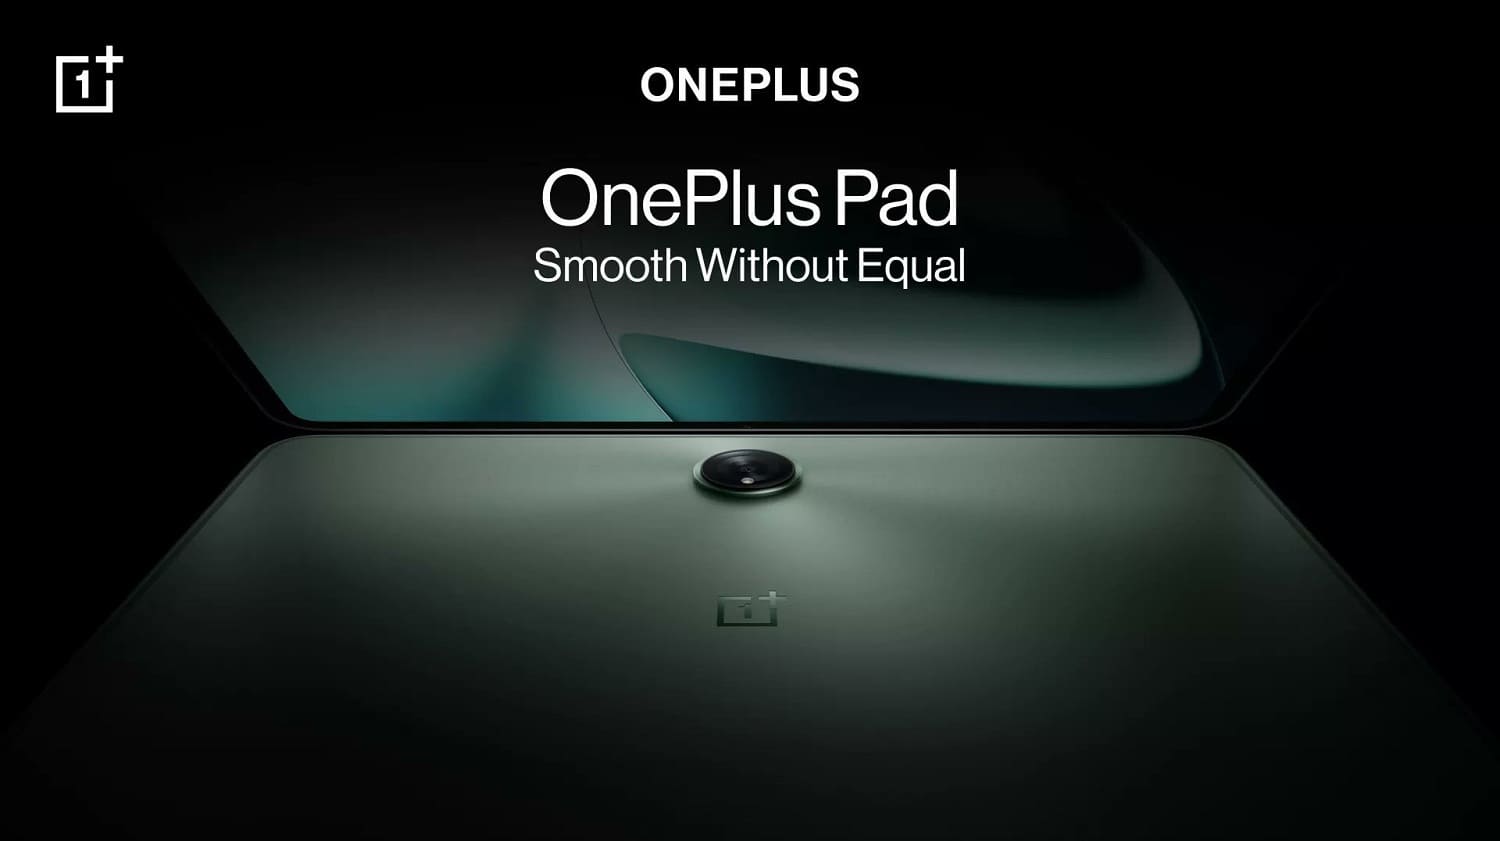 Pantalla de 144 Hz, chip Dimensity 9000, soporte para stylus y carga rápida de 67 W: información privilegiada desvela detalles del OnePlus Pad